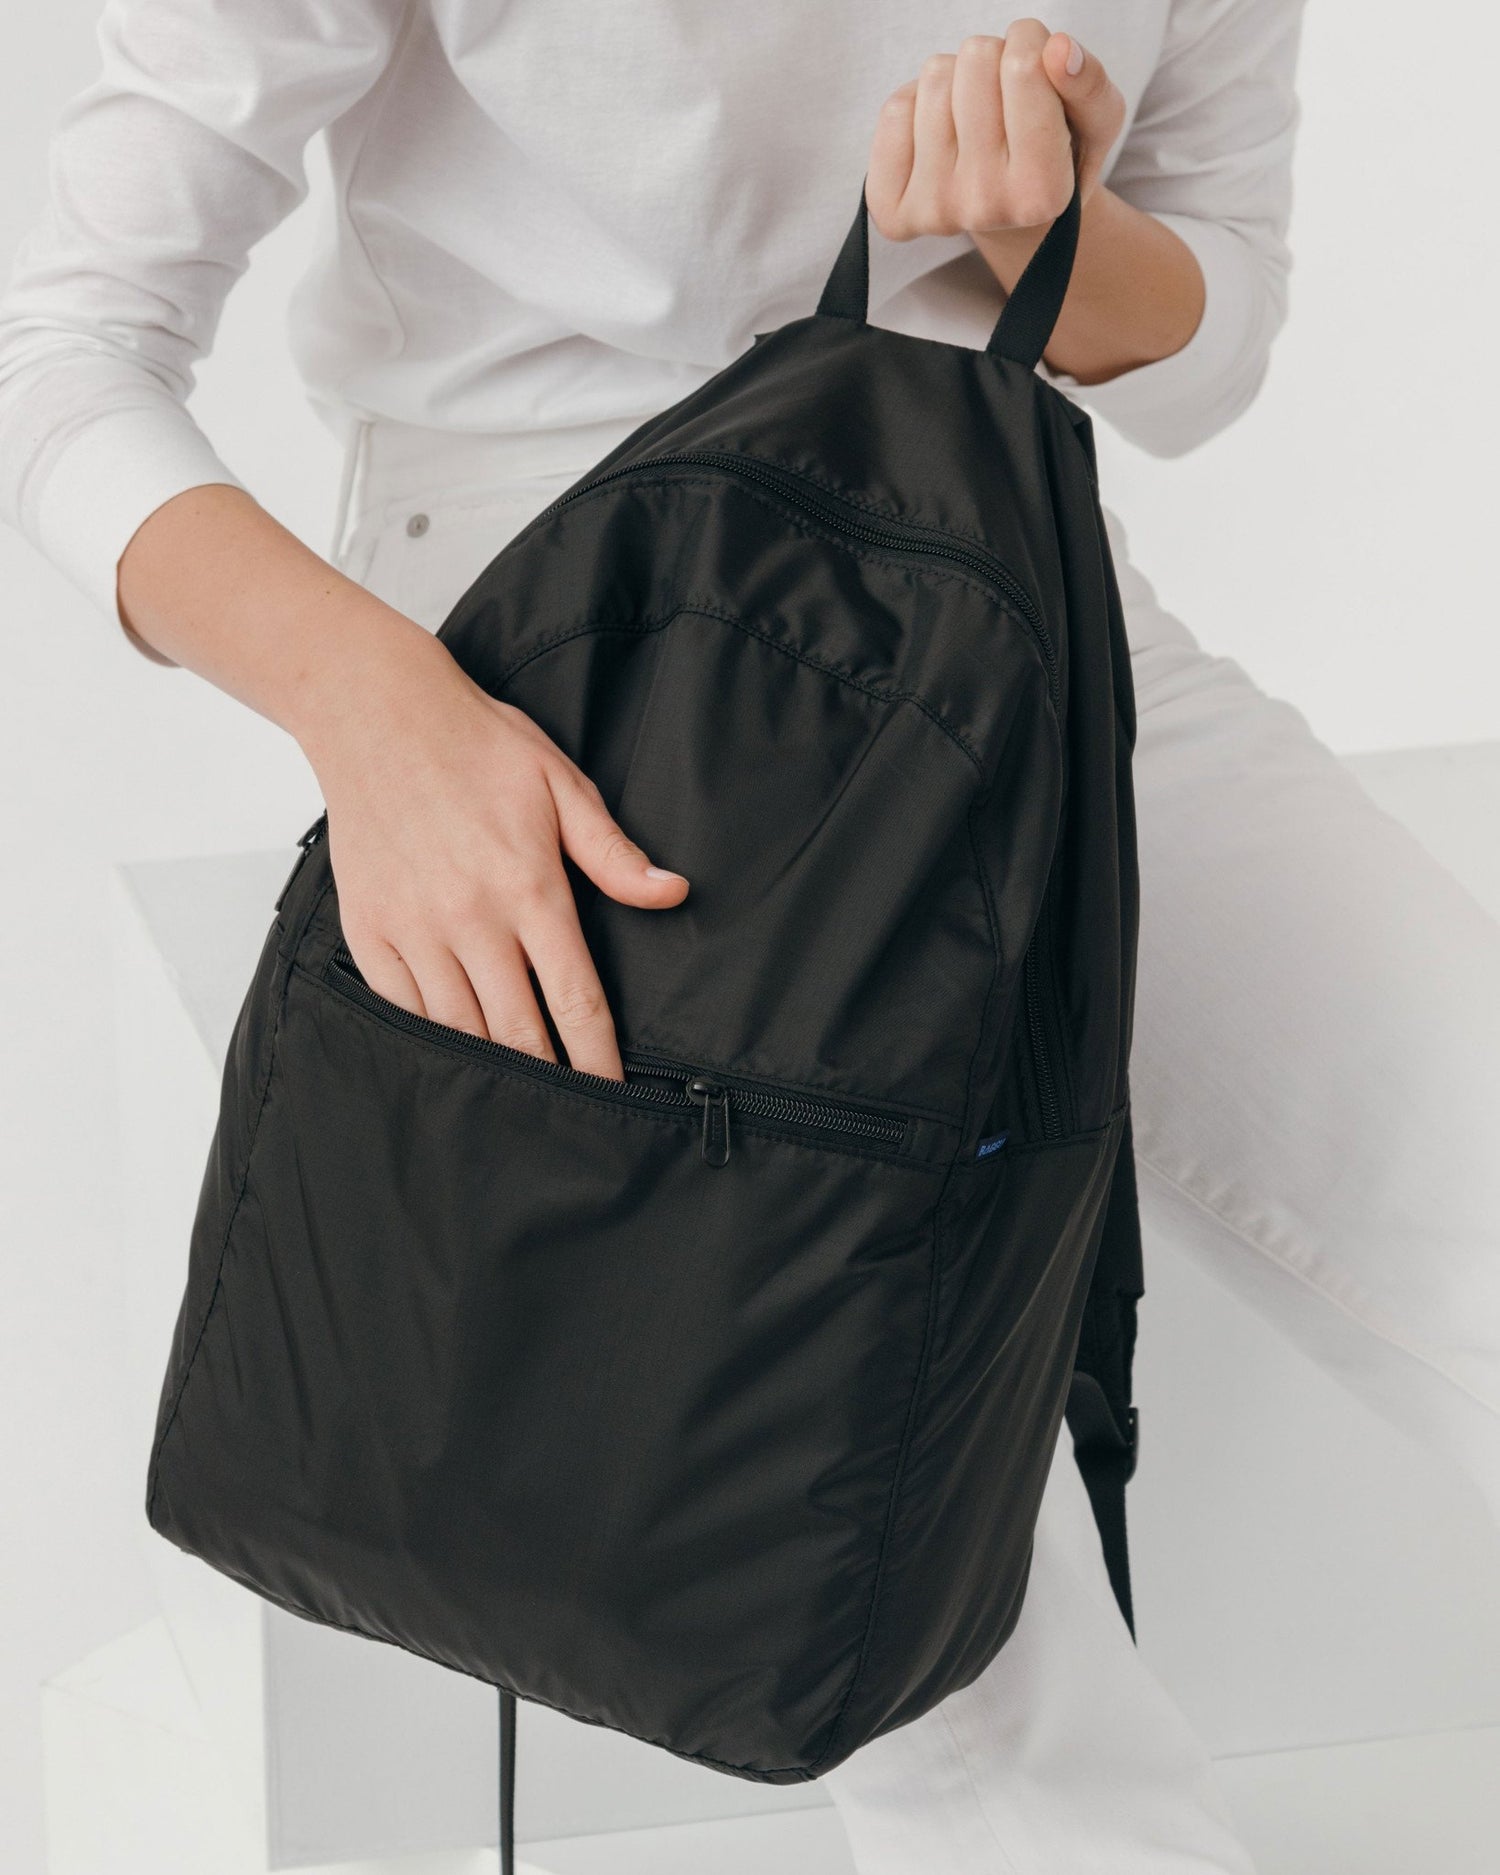 Baggu Ripstop Backpack - Black